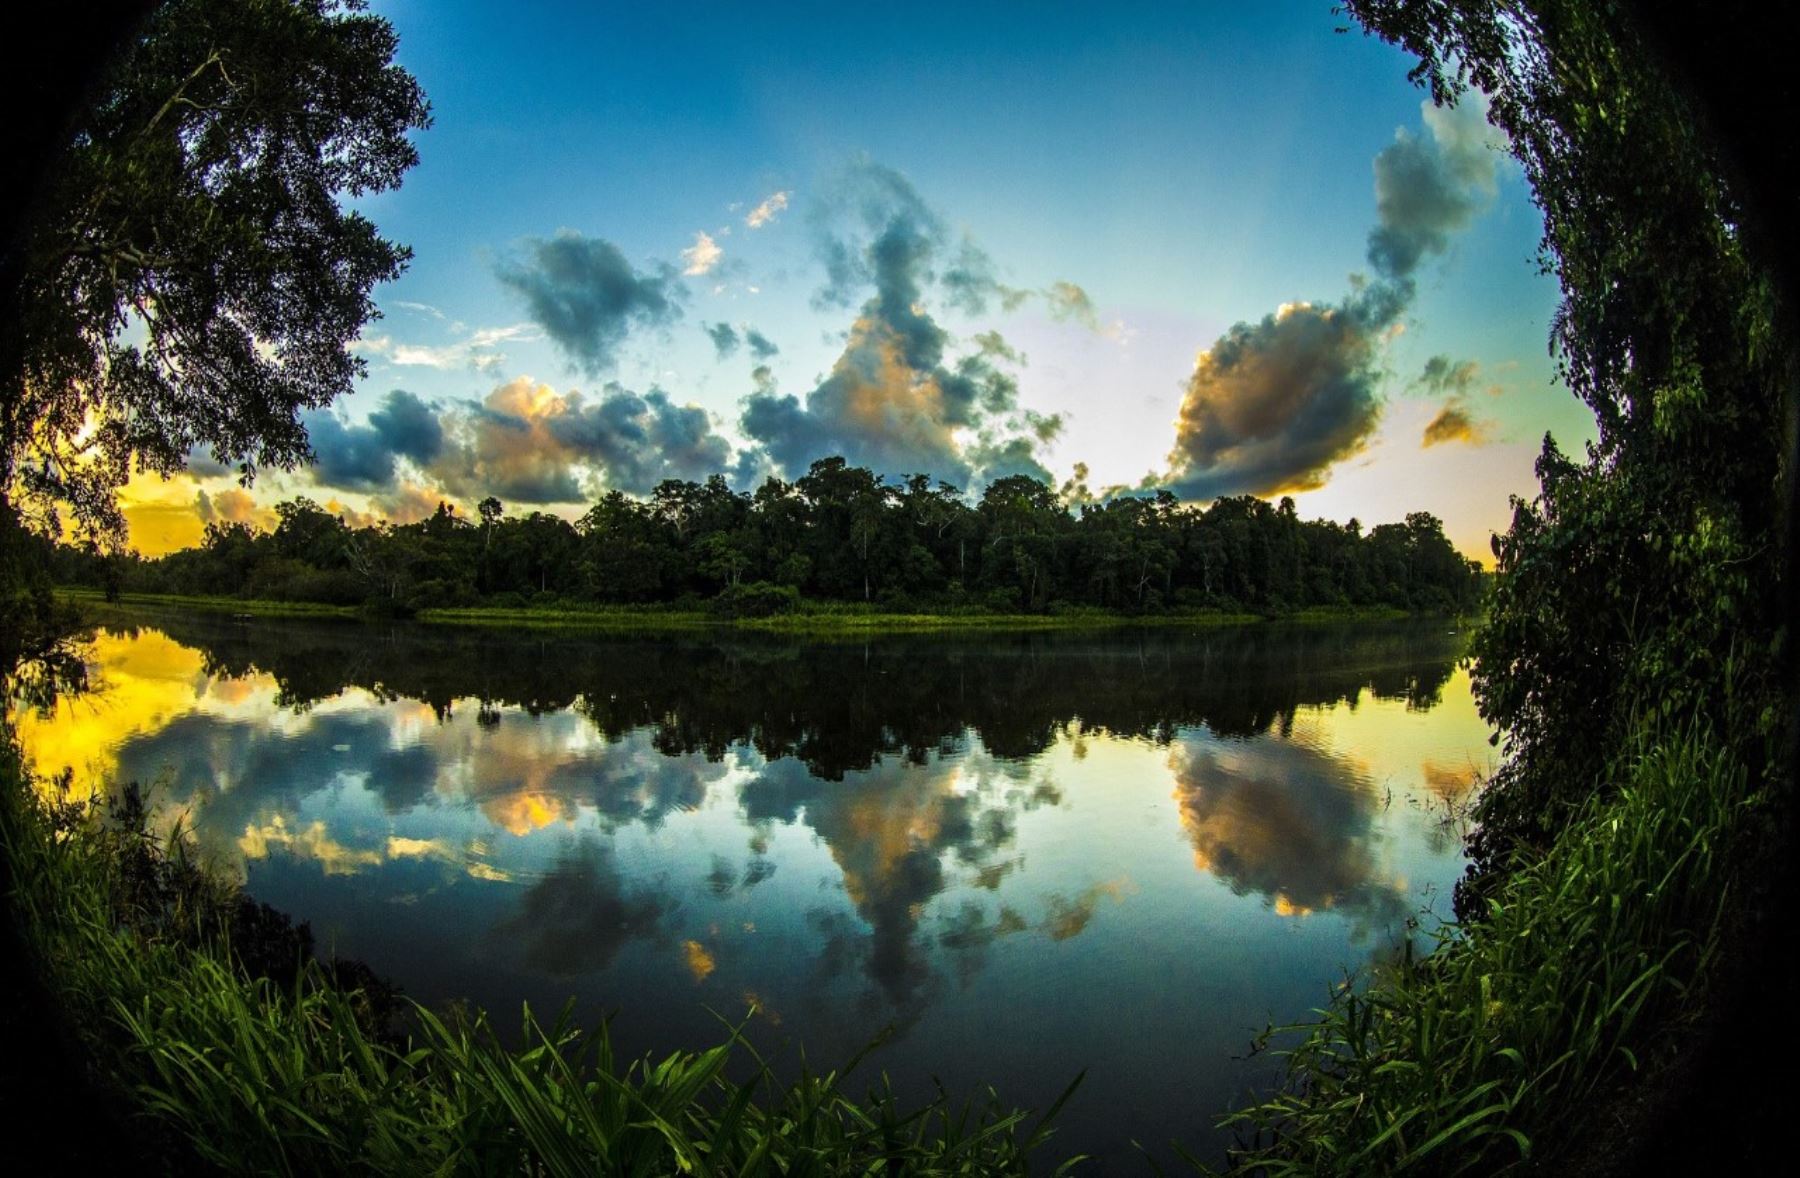 Parque Nacional del Manu celebra 50 años de creación como área natural protegida. Foto: Cortesía Sernanp/Dano Grayson